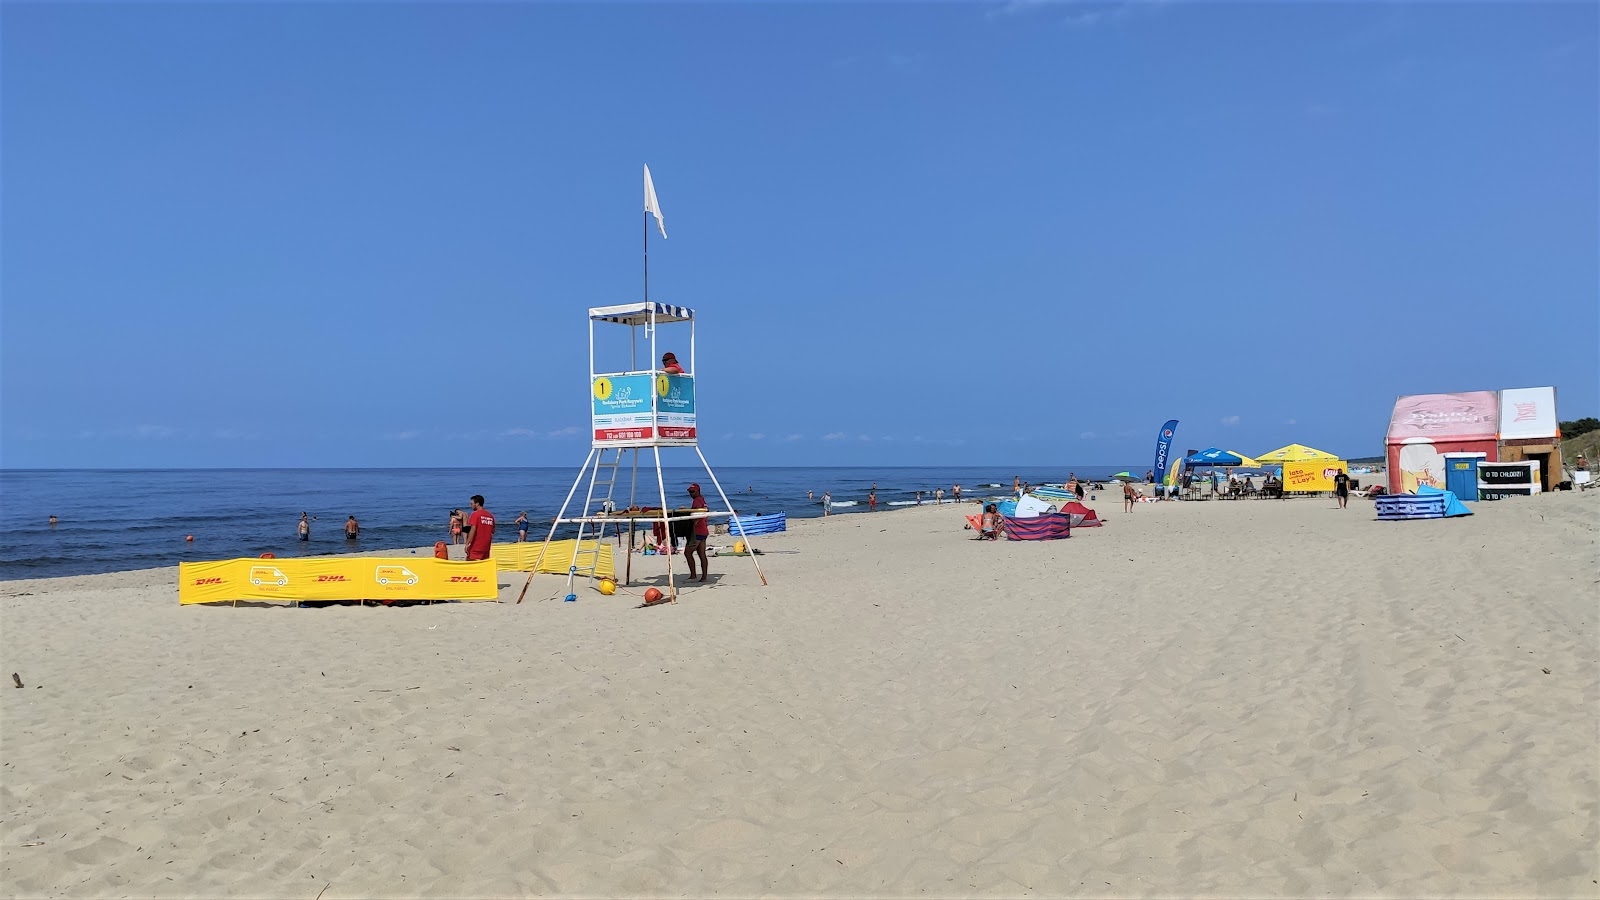 Fotografija Piaski Rybacka beach nahaja se v naravnem okolju